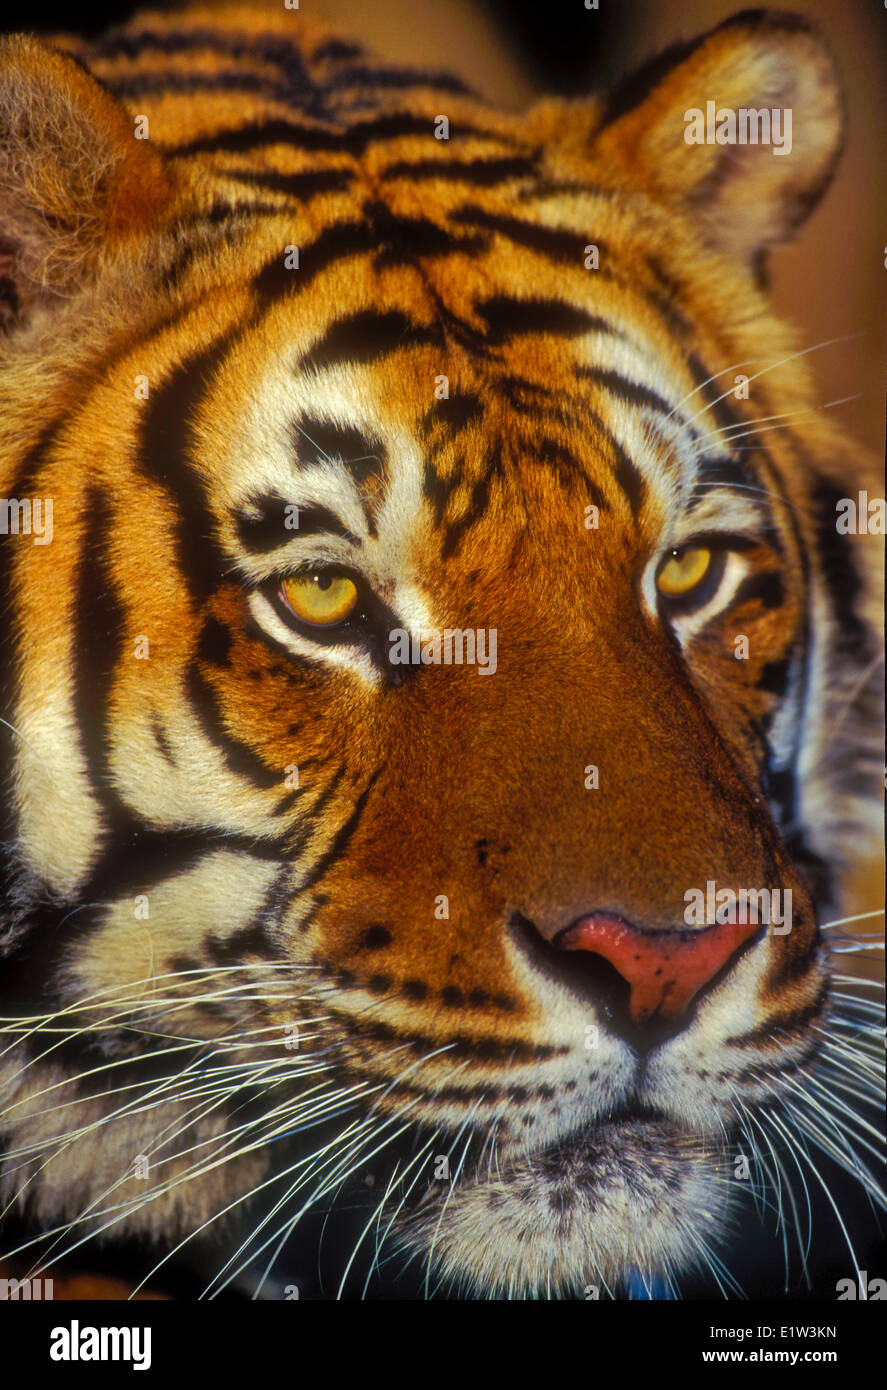 Tigre siberiano (Panthera tigris altaica), especies en peligro de extinción. Foto de stock